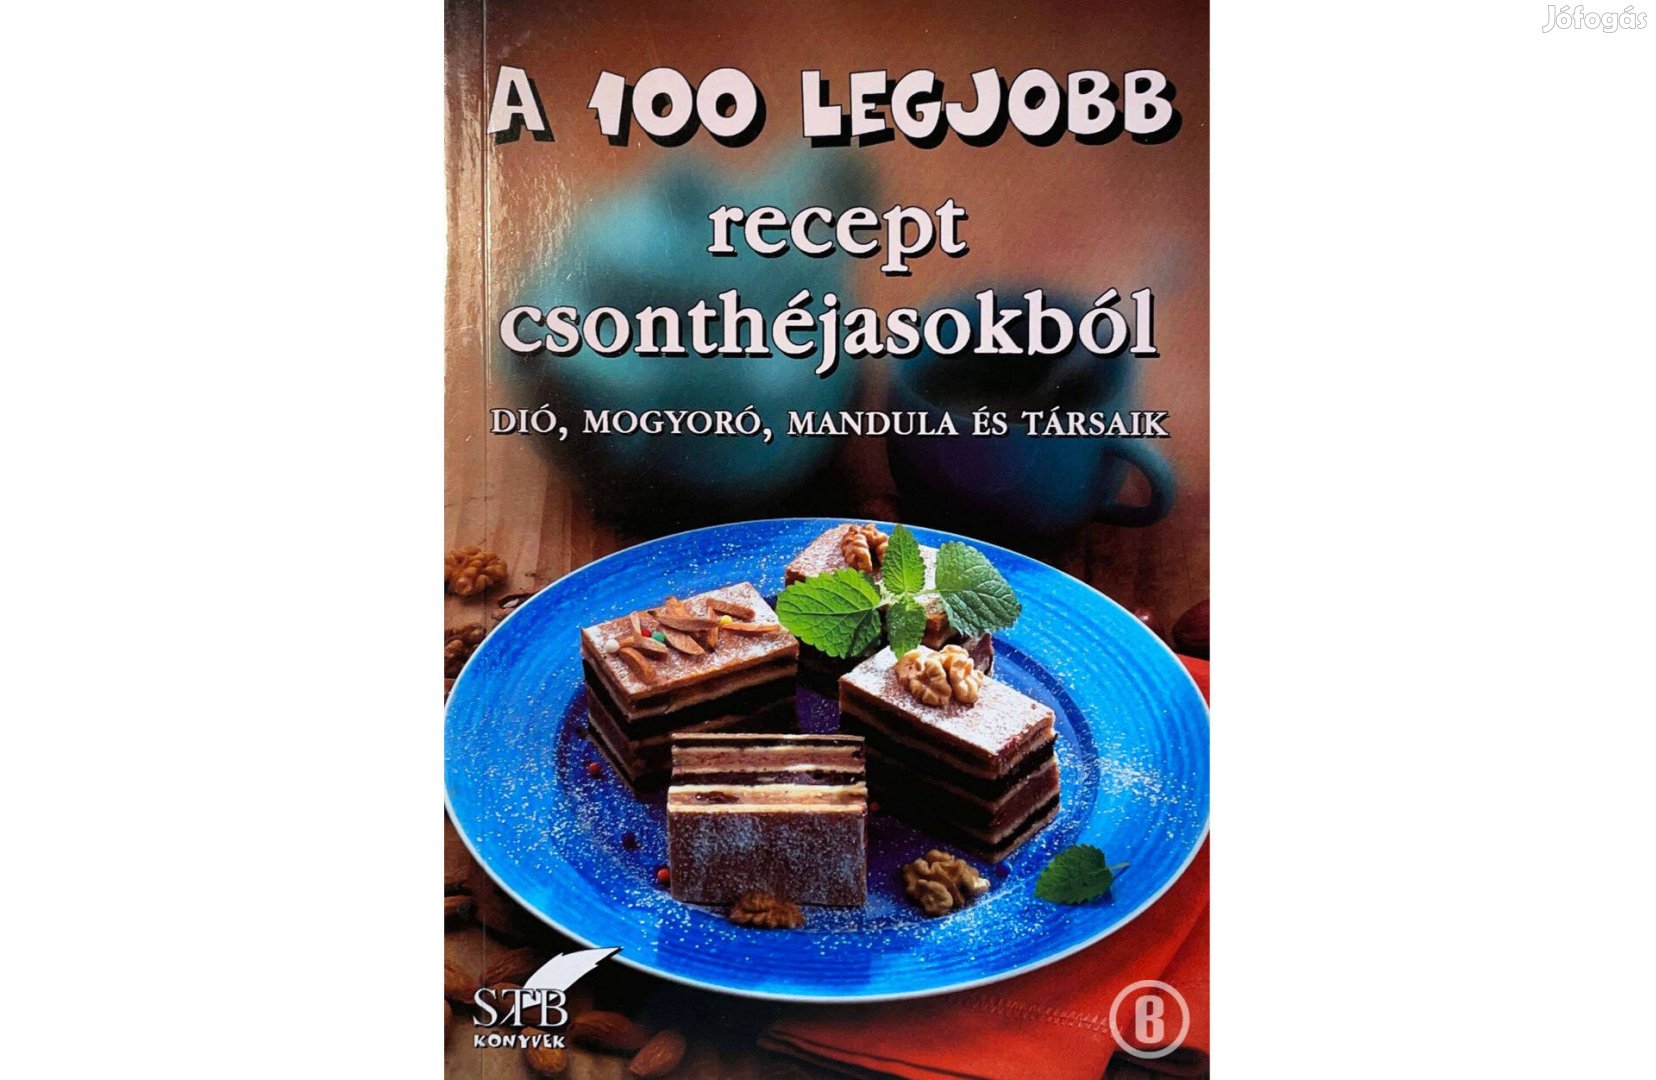 A 100 legjobb recept csonthéjasokból (87. kötet / szerk. Toró Elza)